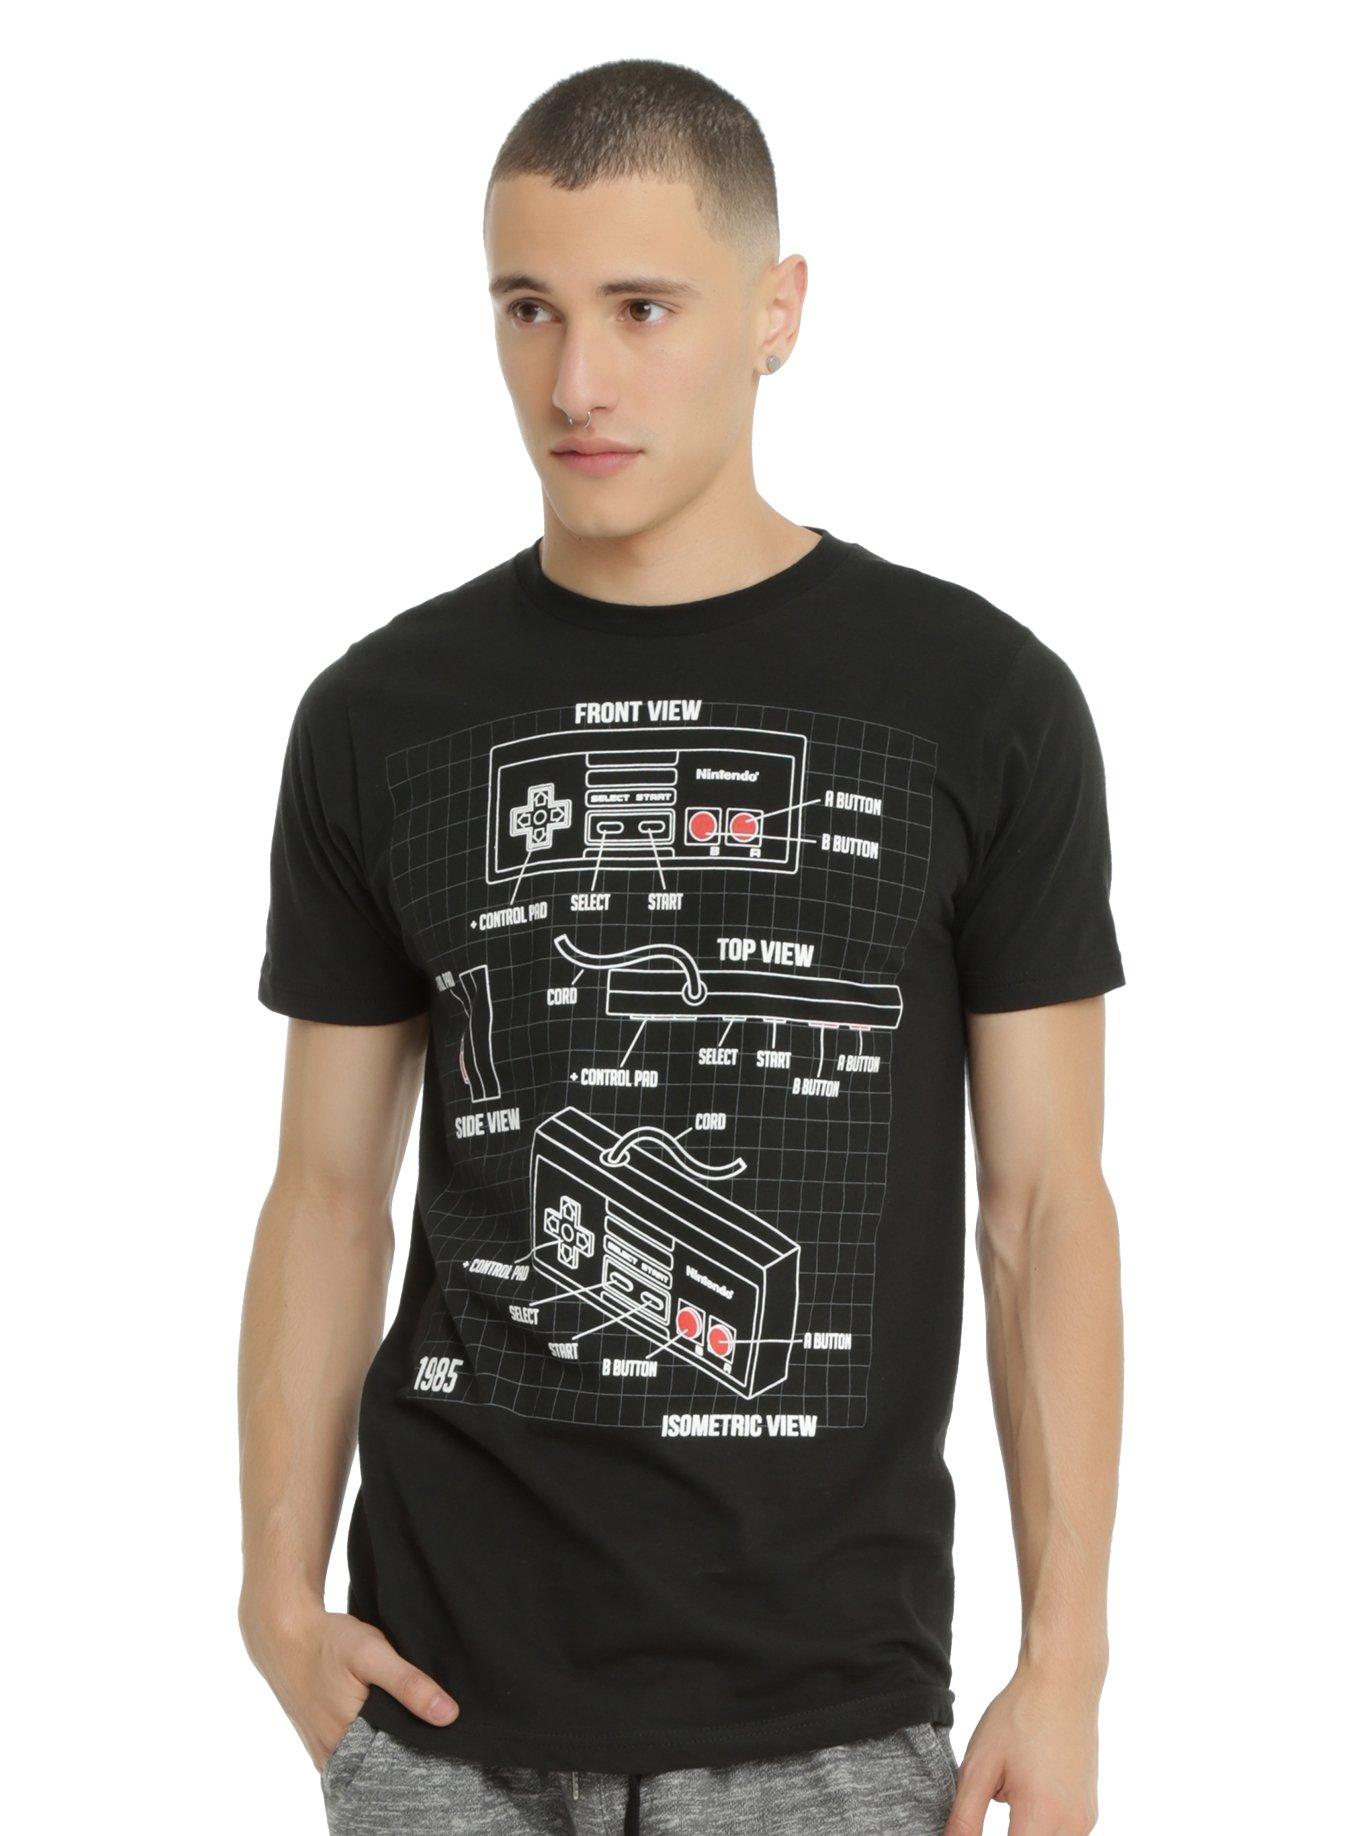 Nintendo NES Classic Controller Schematic T-Shirt, BLACK, hi-res